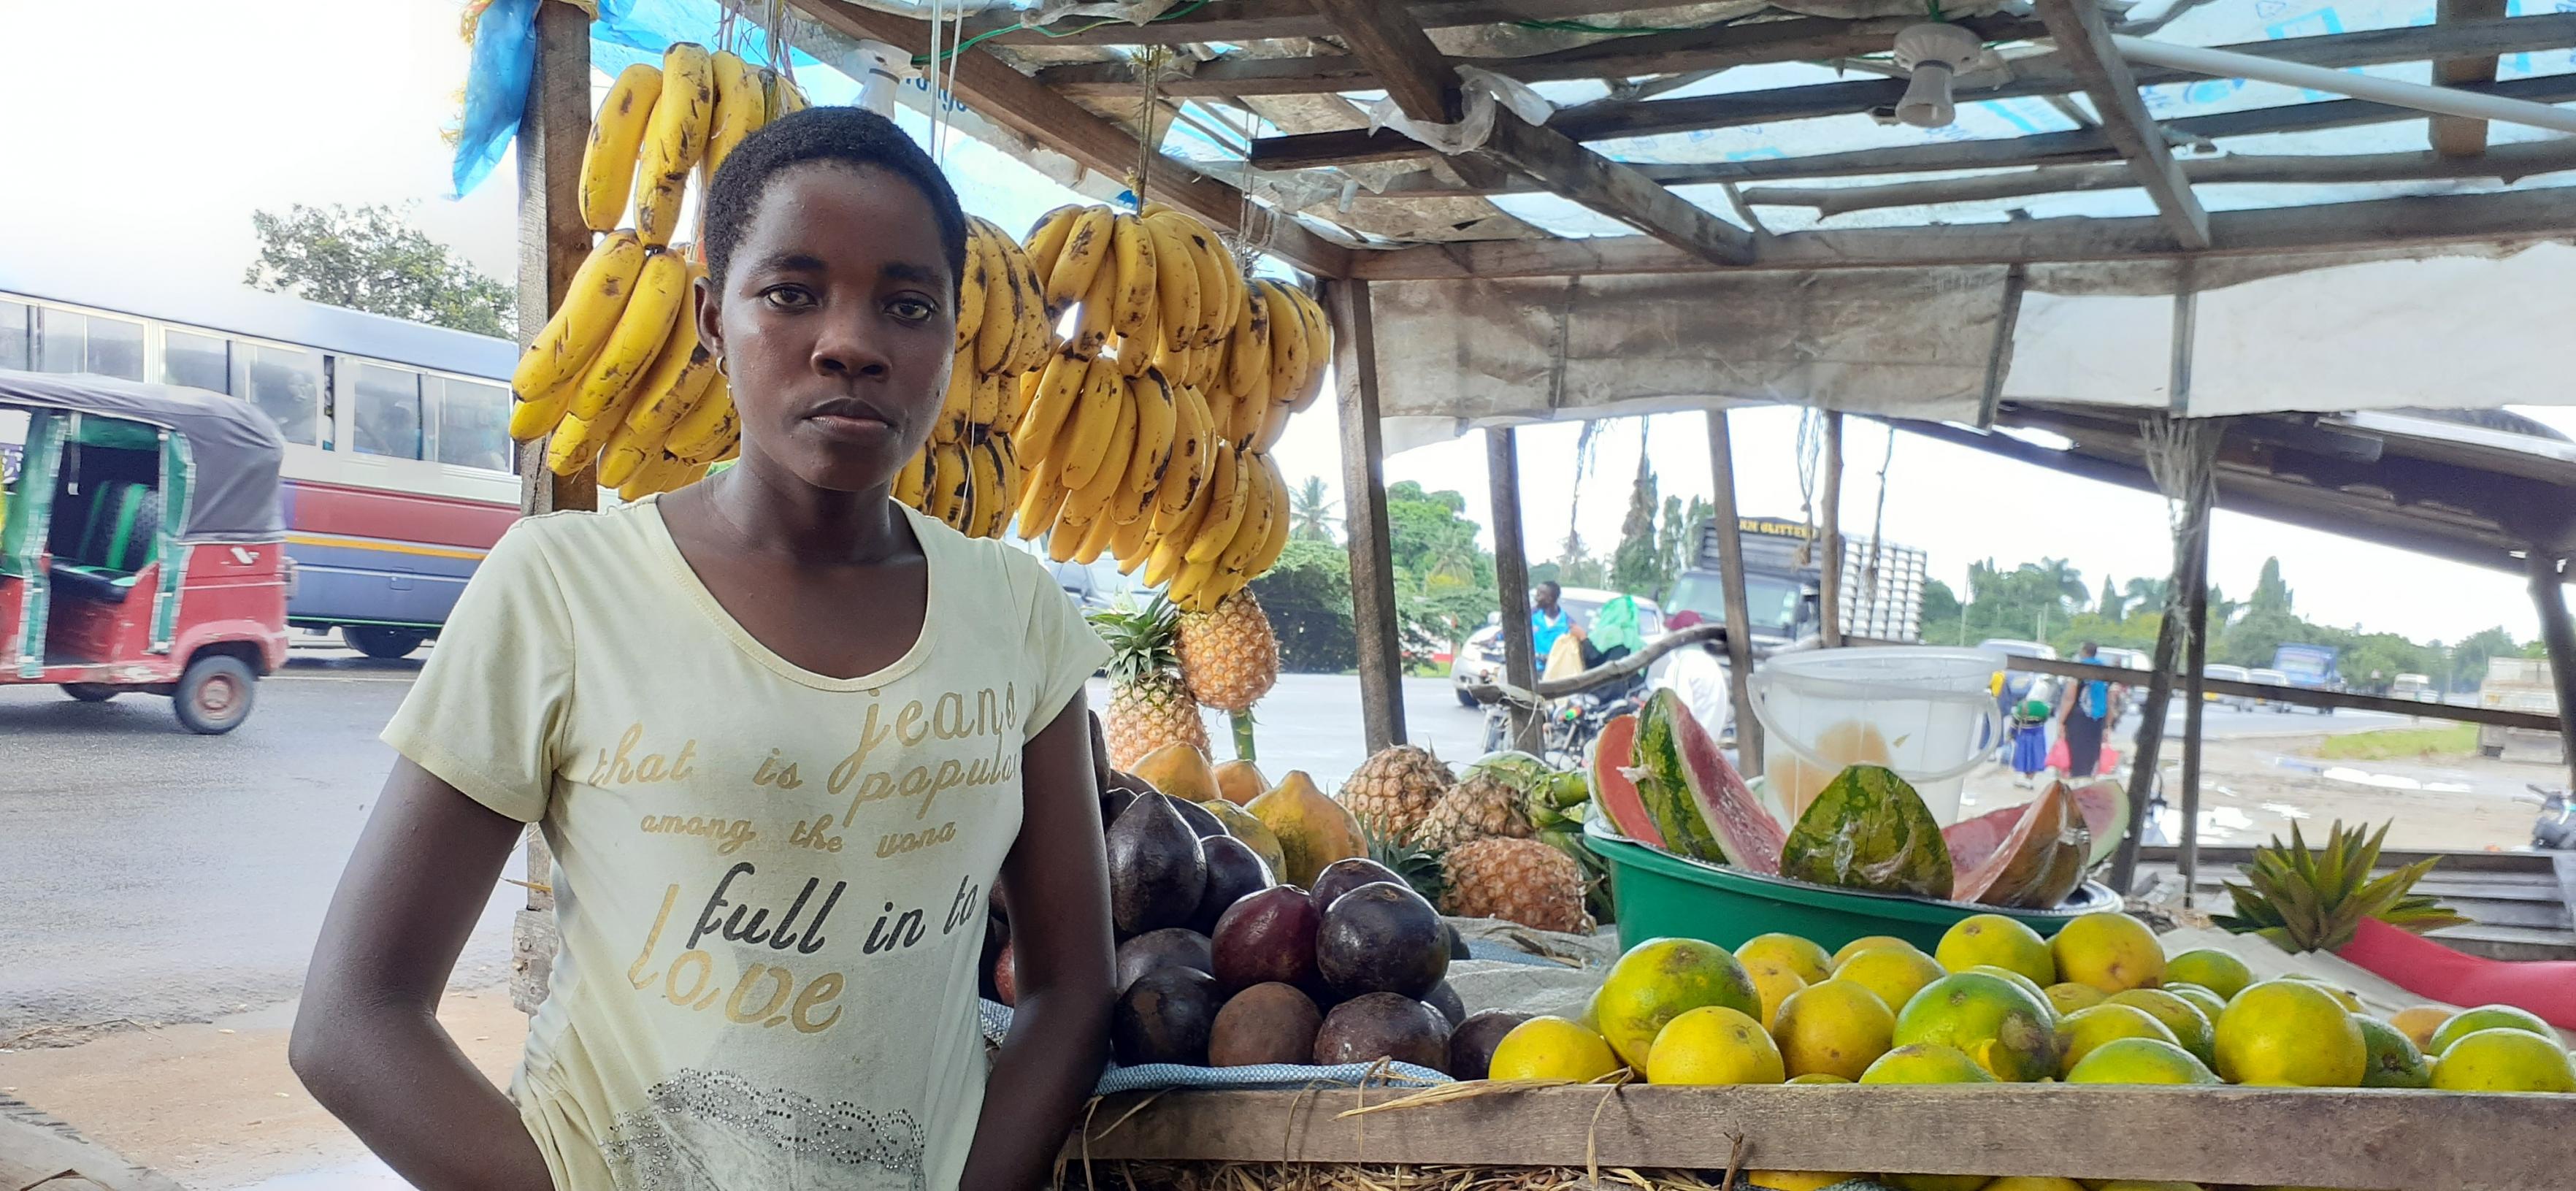 Eine junge Frau steht vor ihrem Marktstand. Bananen, Ananas, Papaya und Avocados sind sorgfältig angeordnet.